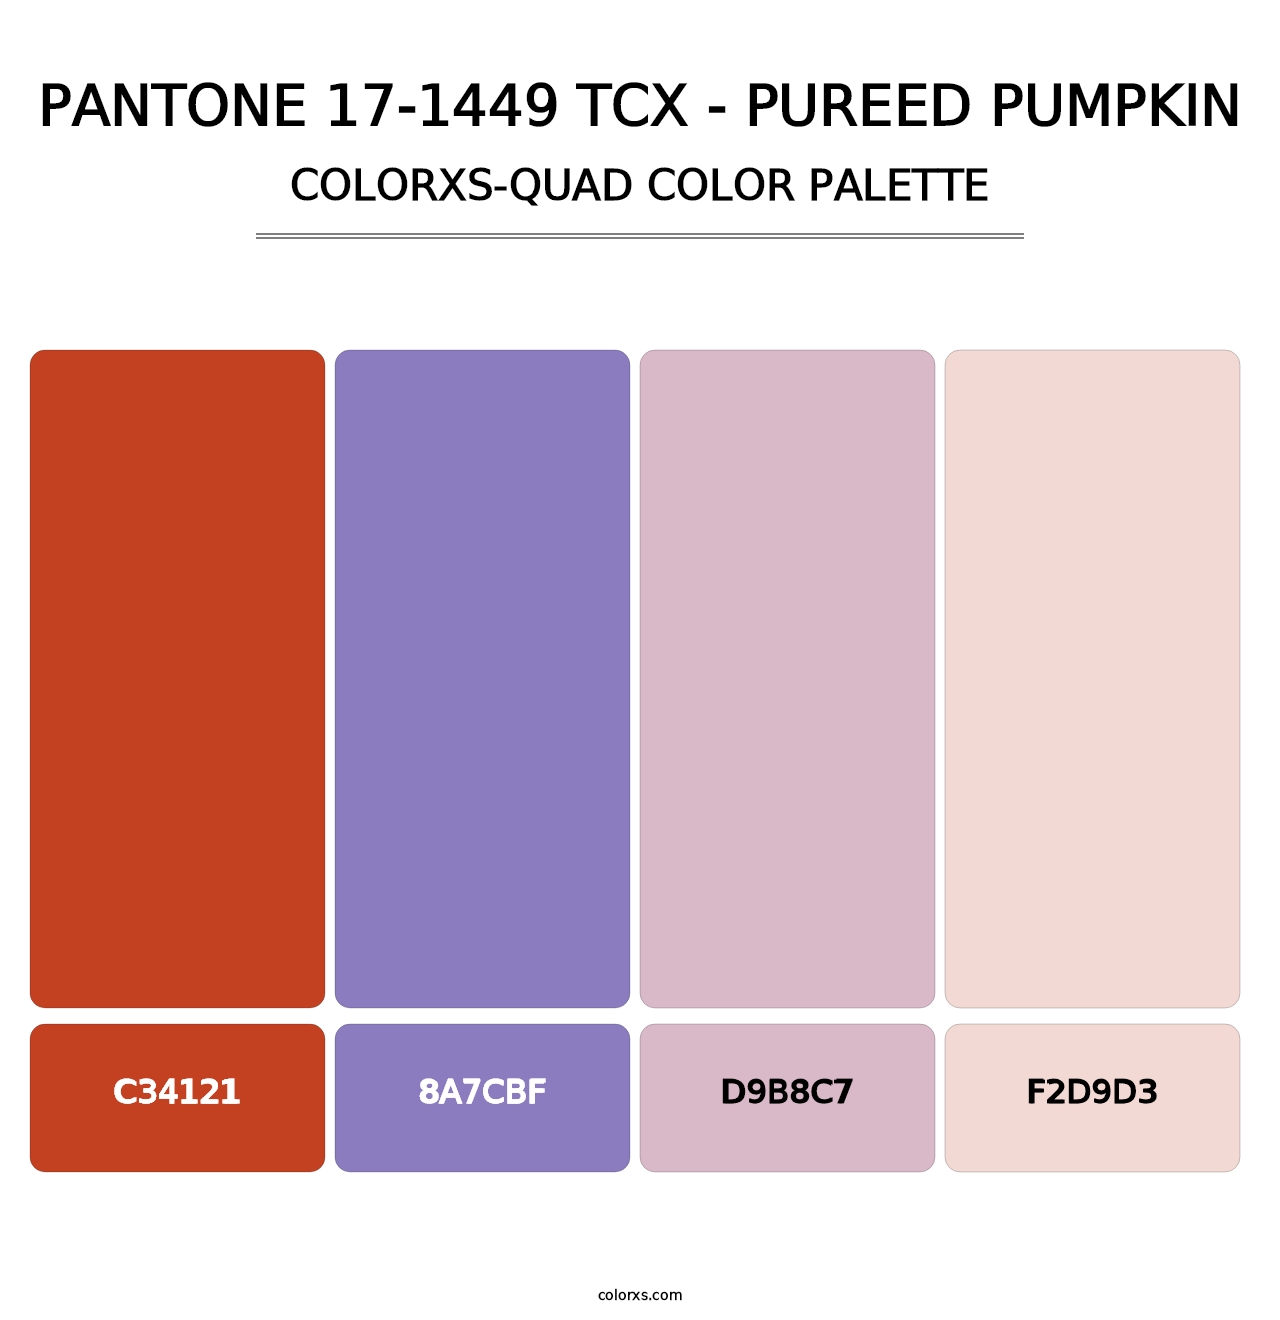 PANTONE 17-1449 TCX - Pureed Pumpkin - Colorxs Quad Palette